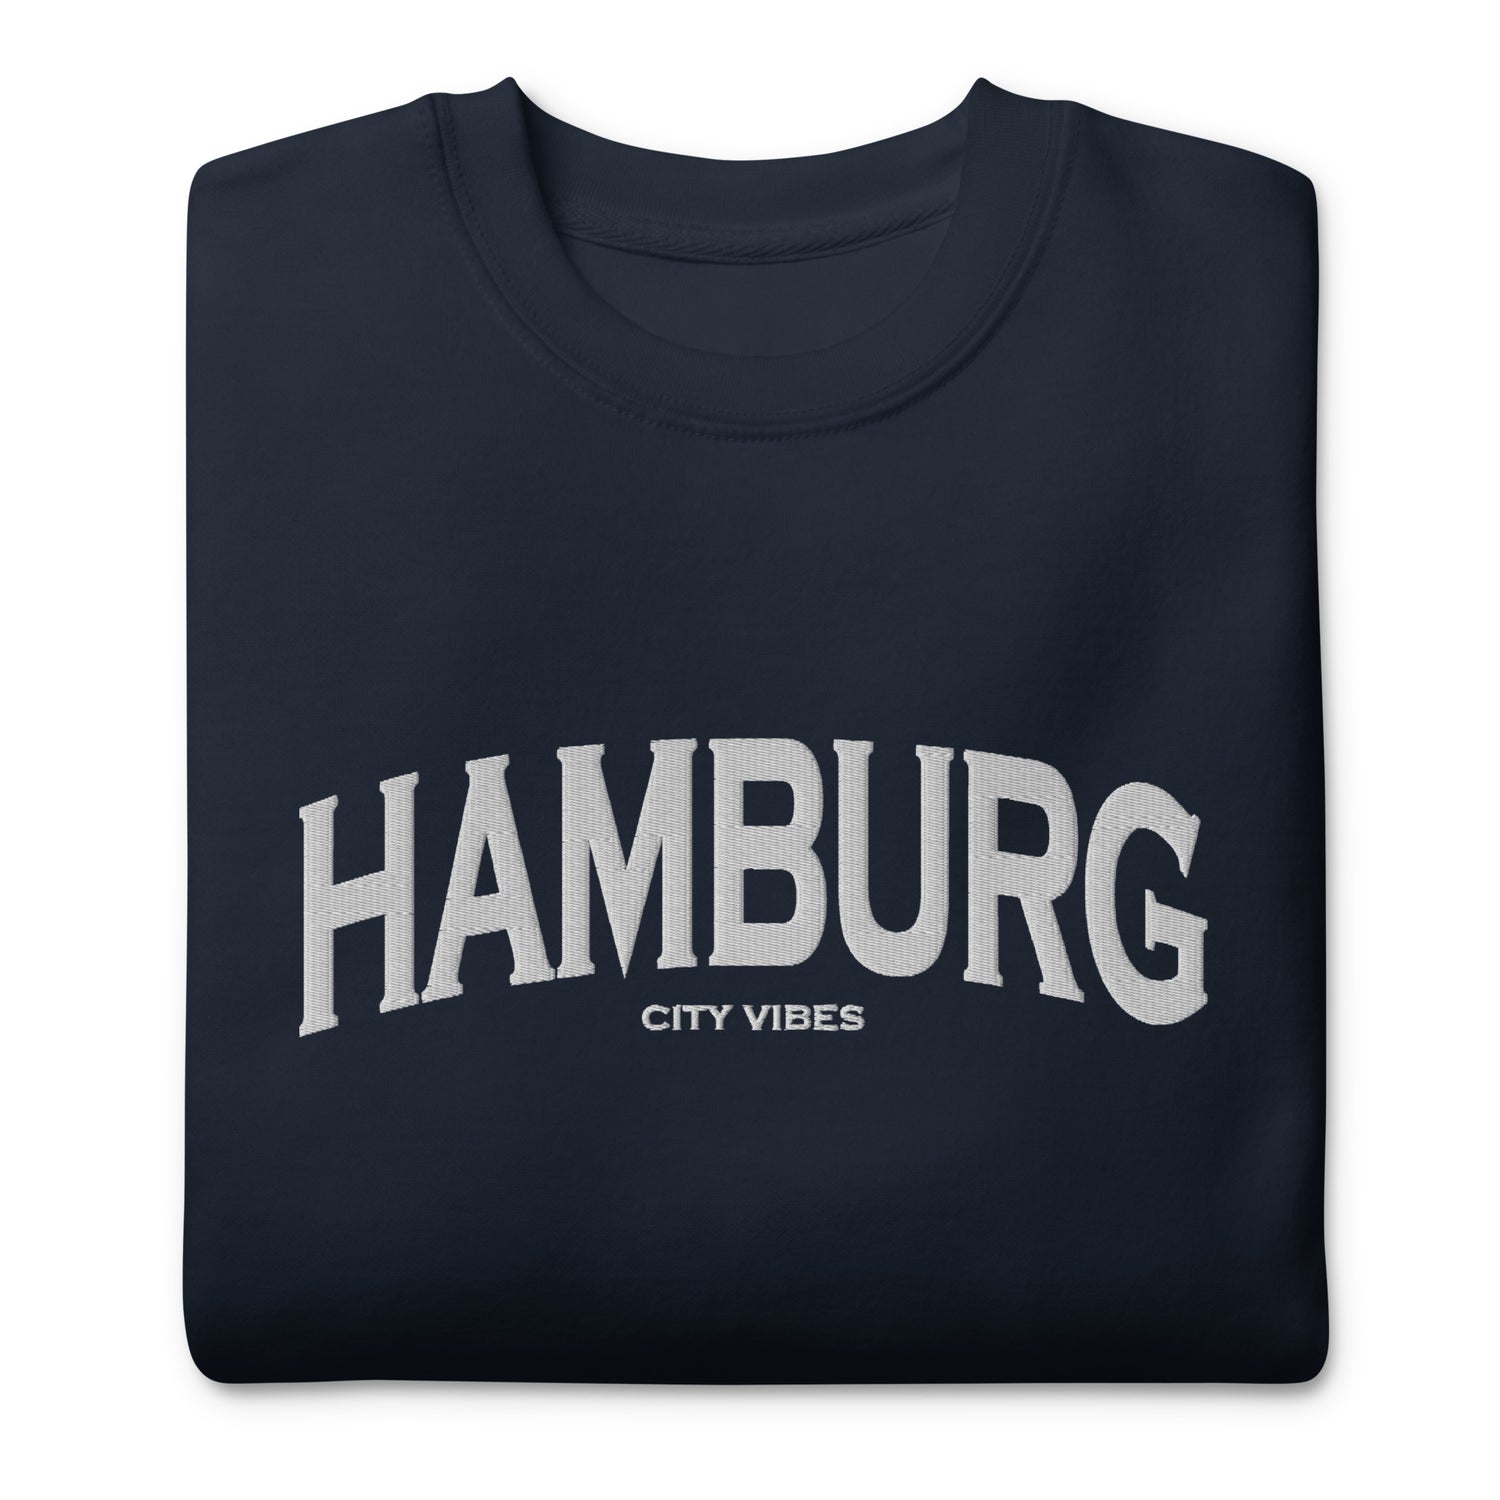 TIME OF VIBES Premium Sweatshirt HAMBURG (Blau/Grau) - €59,00